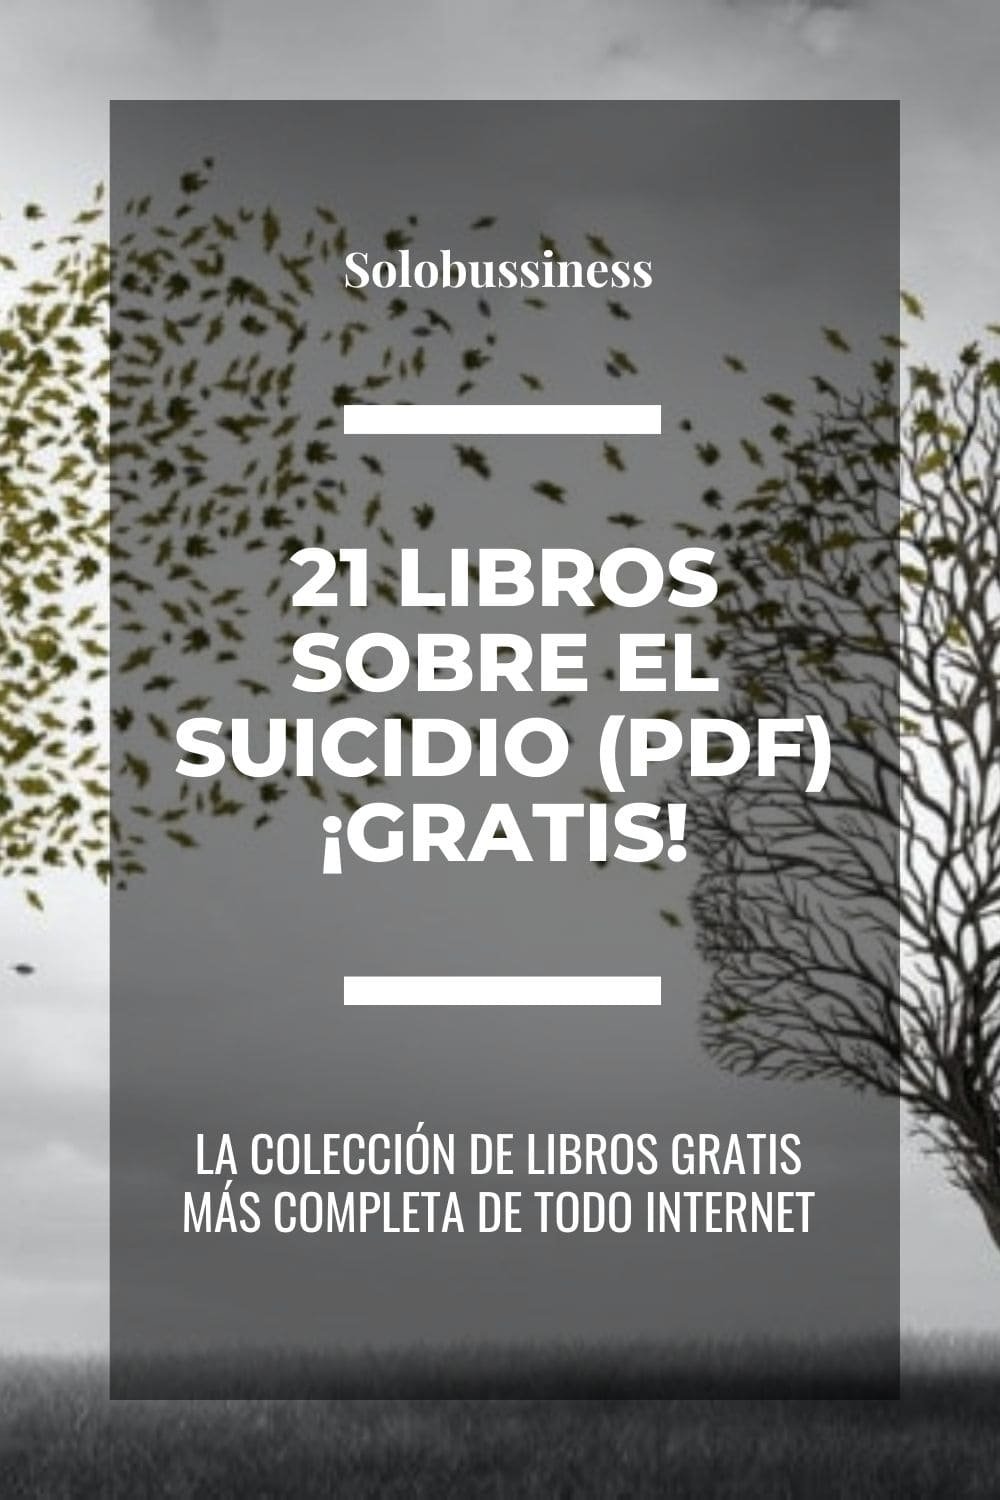 Libros sobre el Suicidio en formato pdf